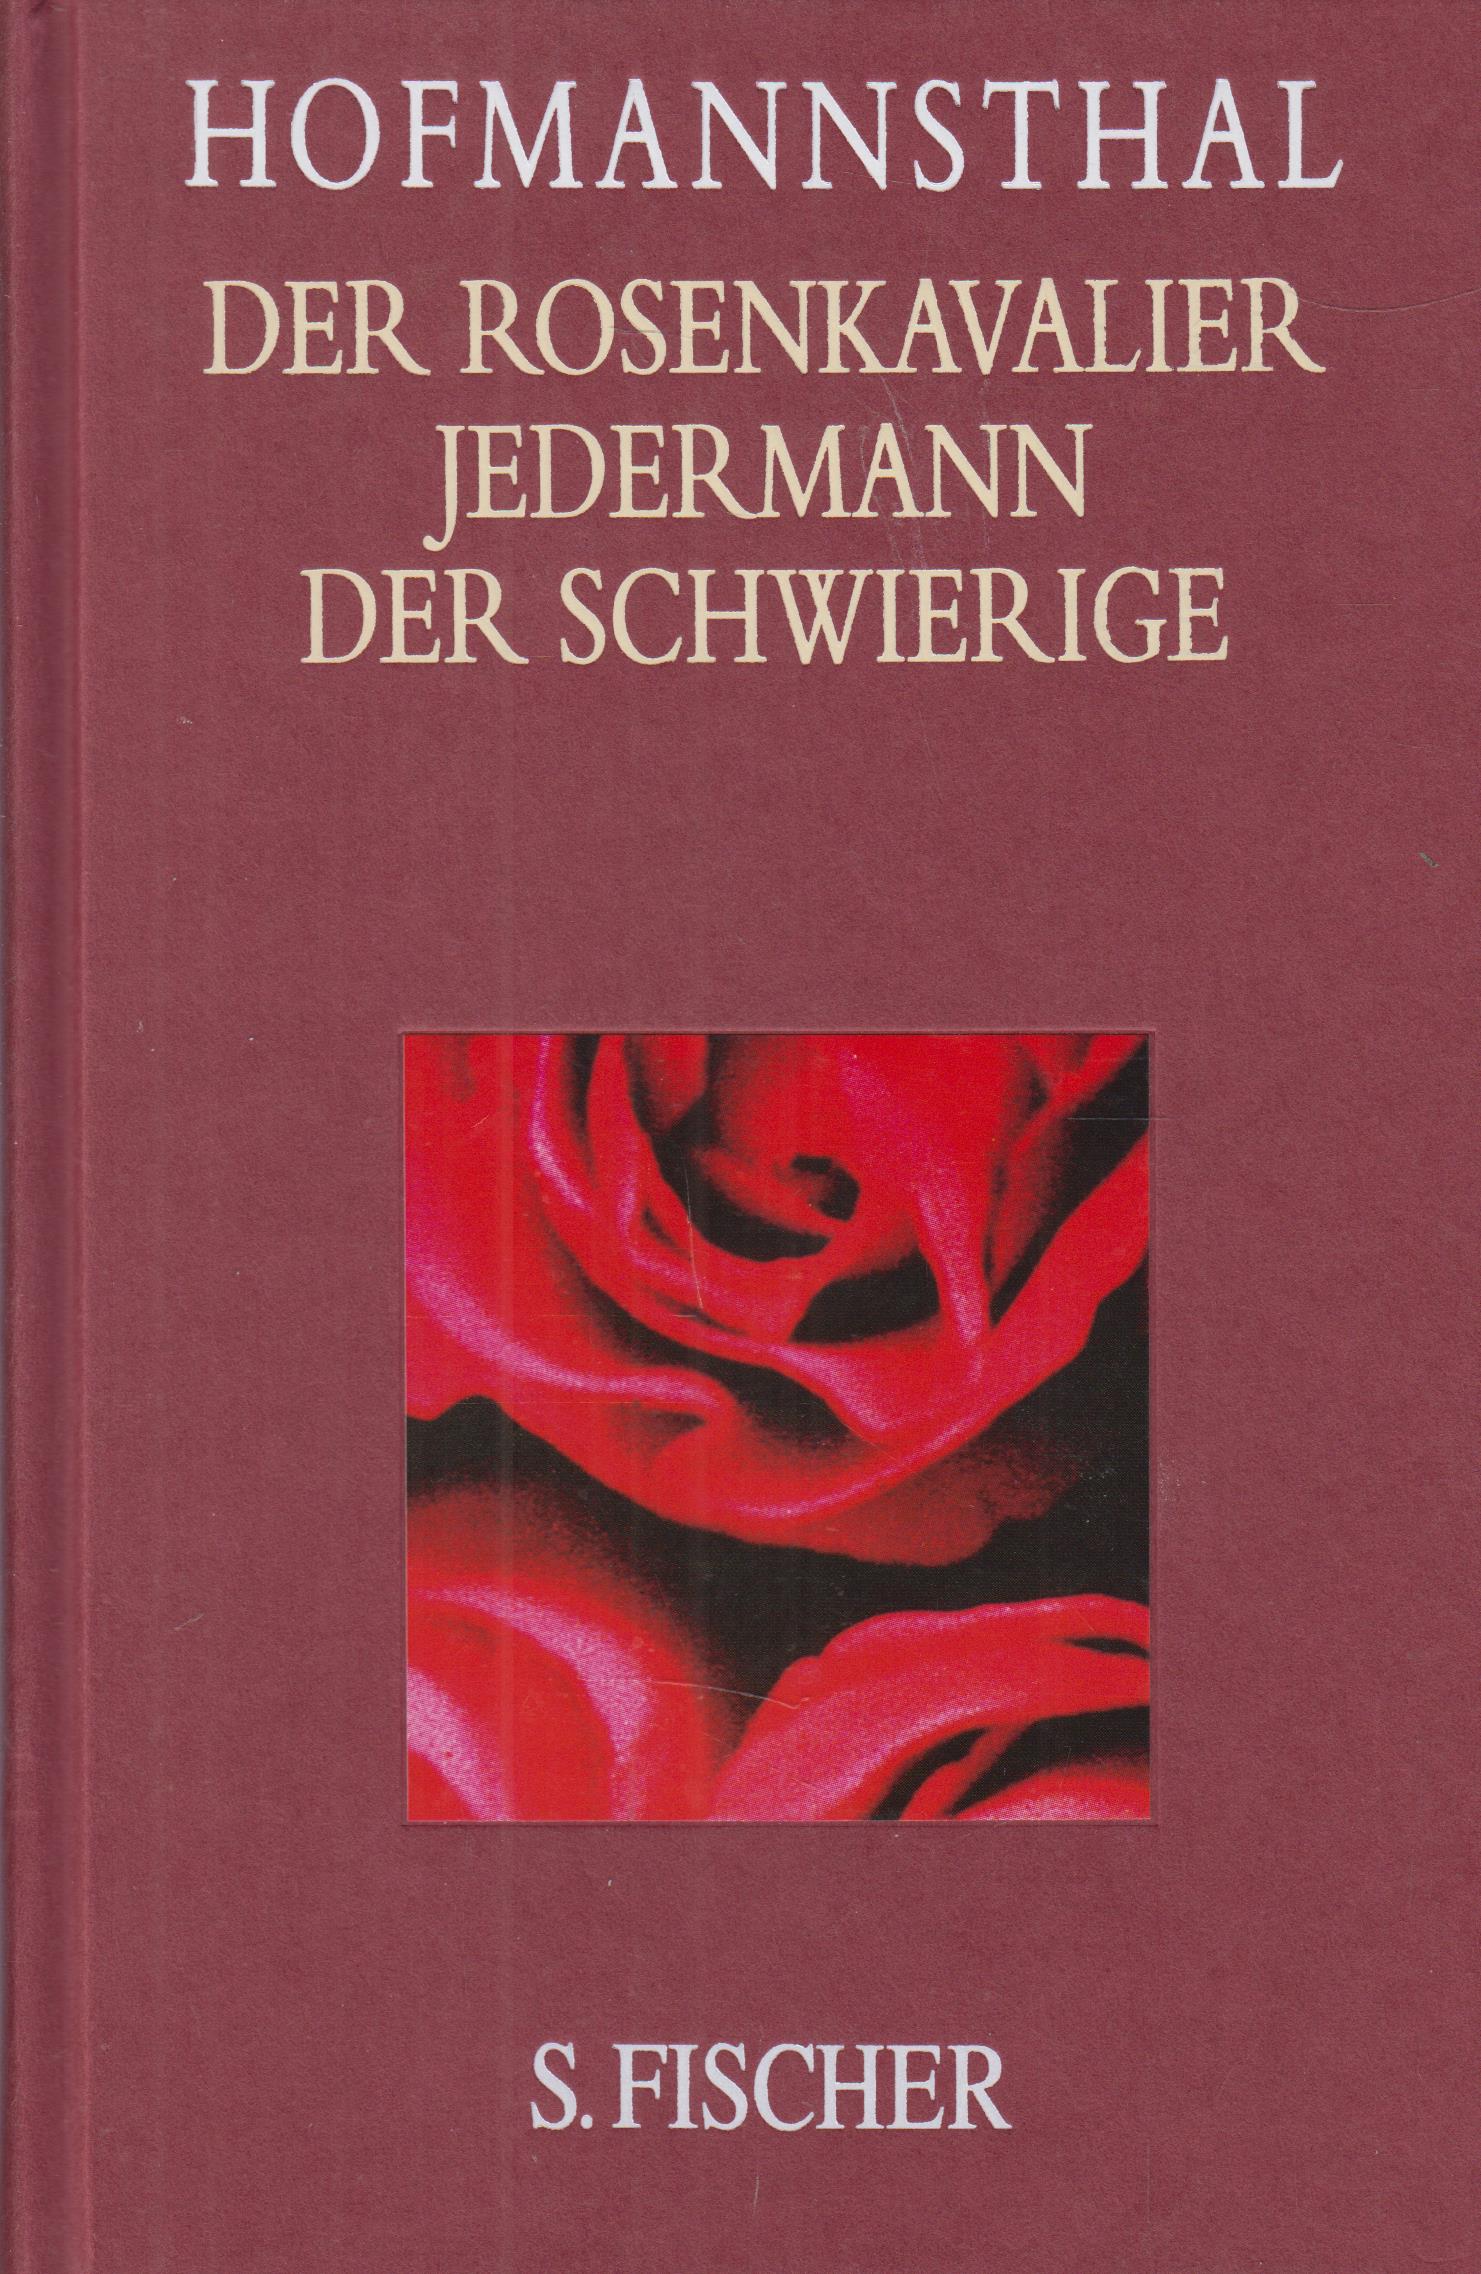 Der Rosenkavalier / Jedermann / Der Schwierige - Hofmannsthal, Hugo von